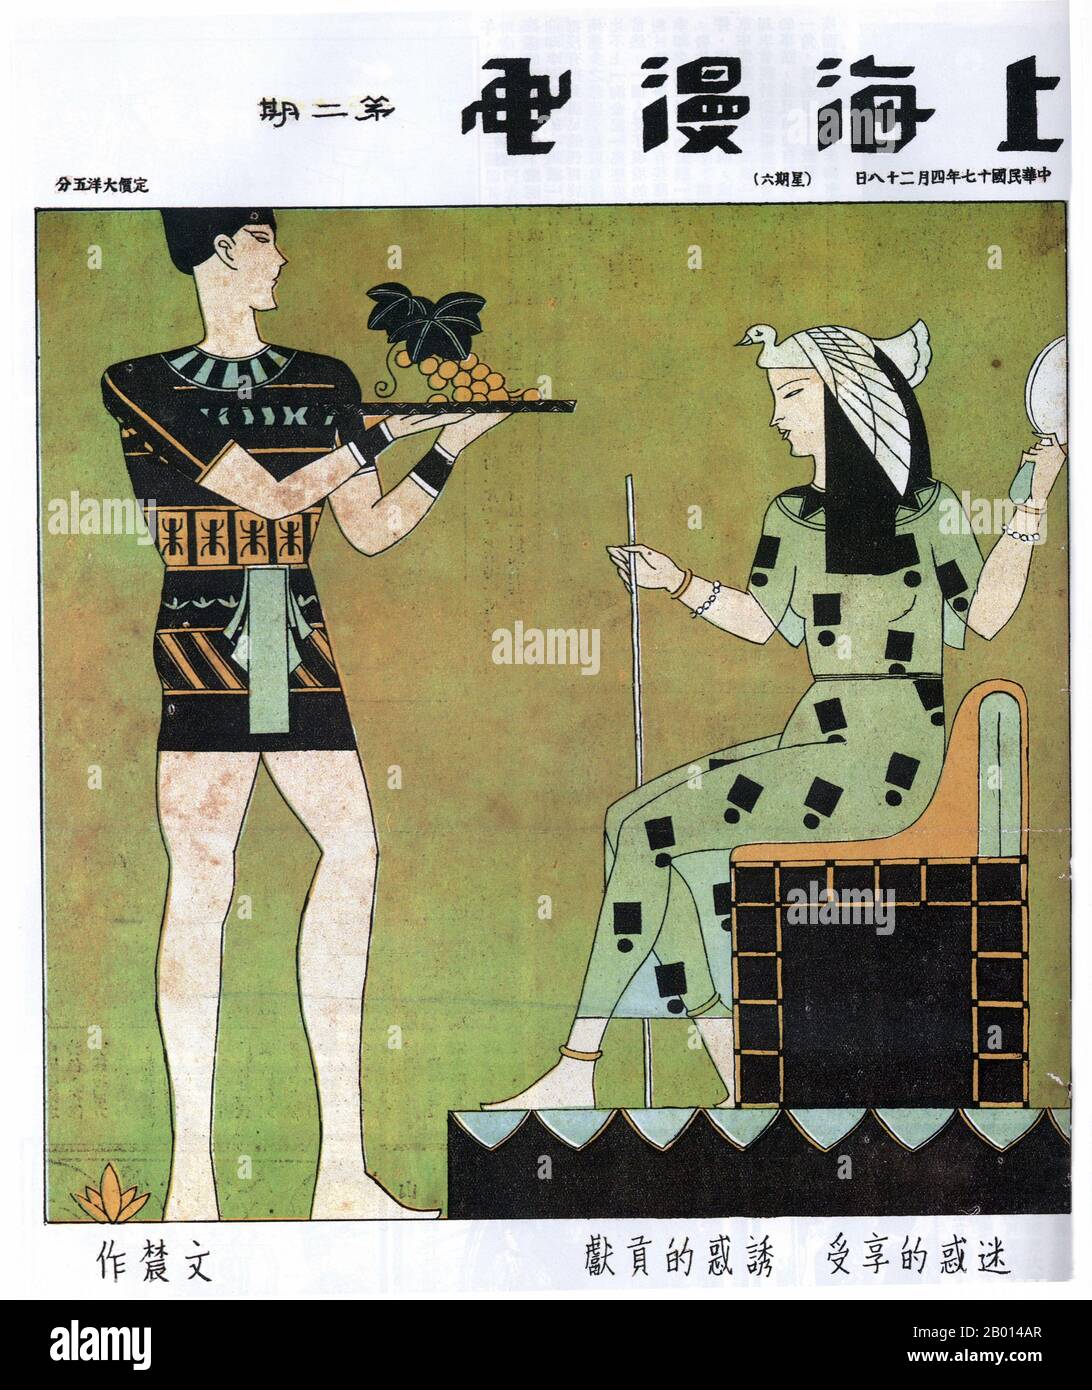 China: Ein Bild aus „Shanghai Manhua“, das von der Kunst des alten Ägypten stammt. Ein junger Mann bietet einer stilisierten Königin ein Tablett mit Trauben an. Die Bildunterschrift übersetzt: „Verlockung anbieten, Verliebtheit empfangen“. Von Huan Wennong, 28. April 1928. Das zwischen dem 21. April 1928 und dem 7. Juni 1930 erschienene Bildband "Shanghai Manhua" (Shanghai Sketch) war eine Mischung aus Zeichnungen, Fotografien und Bildern, die von Werbung über Sozialkritik bis hin zu politischen Karikaturen reichten. Shanghai Manhua war ein Ventil für professionelle Cartoonisten und Skizzenmeister, im Allgemeinen avantgardistischer oder progressiver Natur. Stockfoto